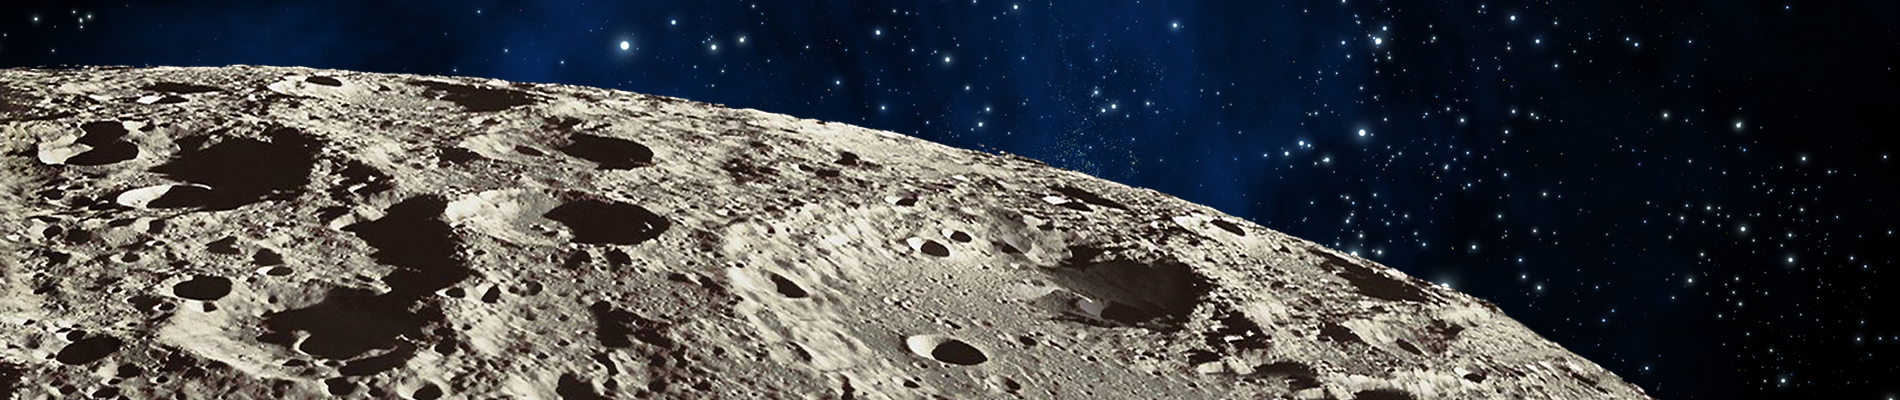 header image for the lunar rover website